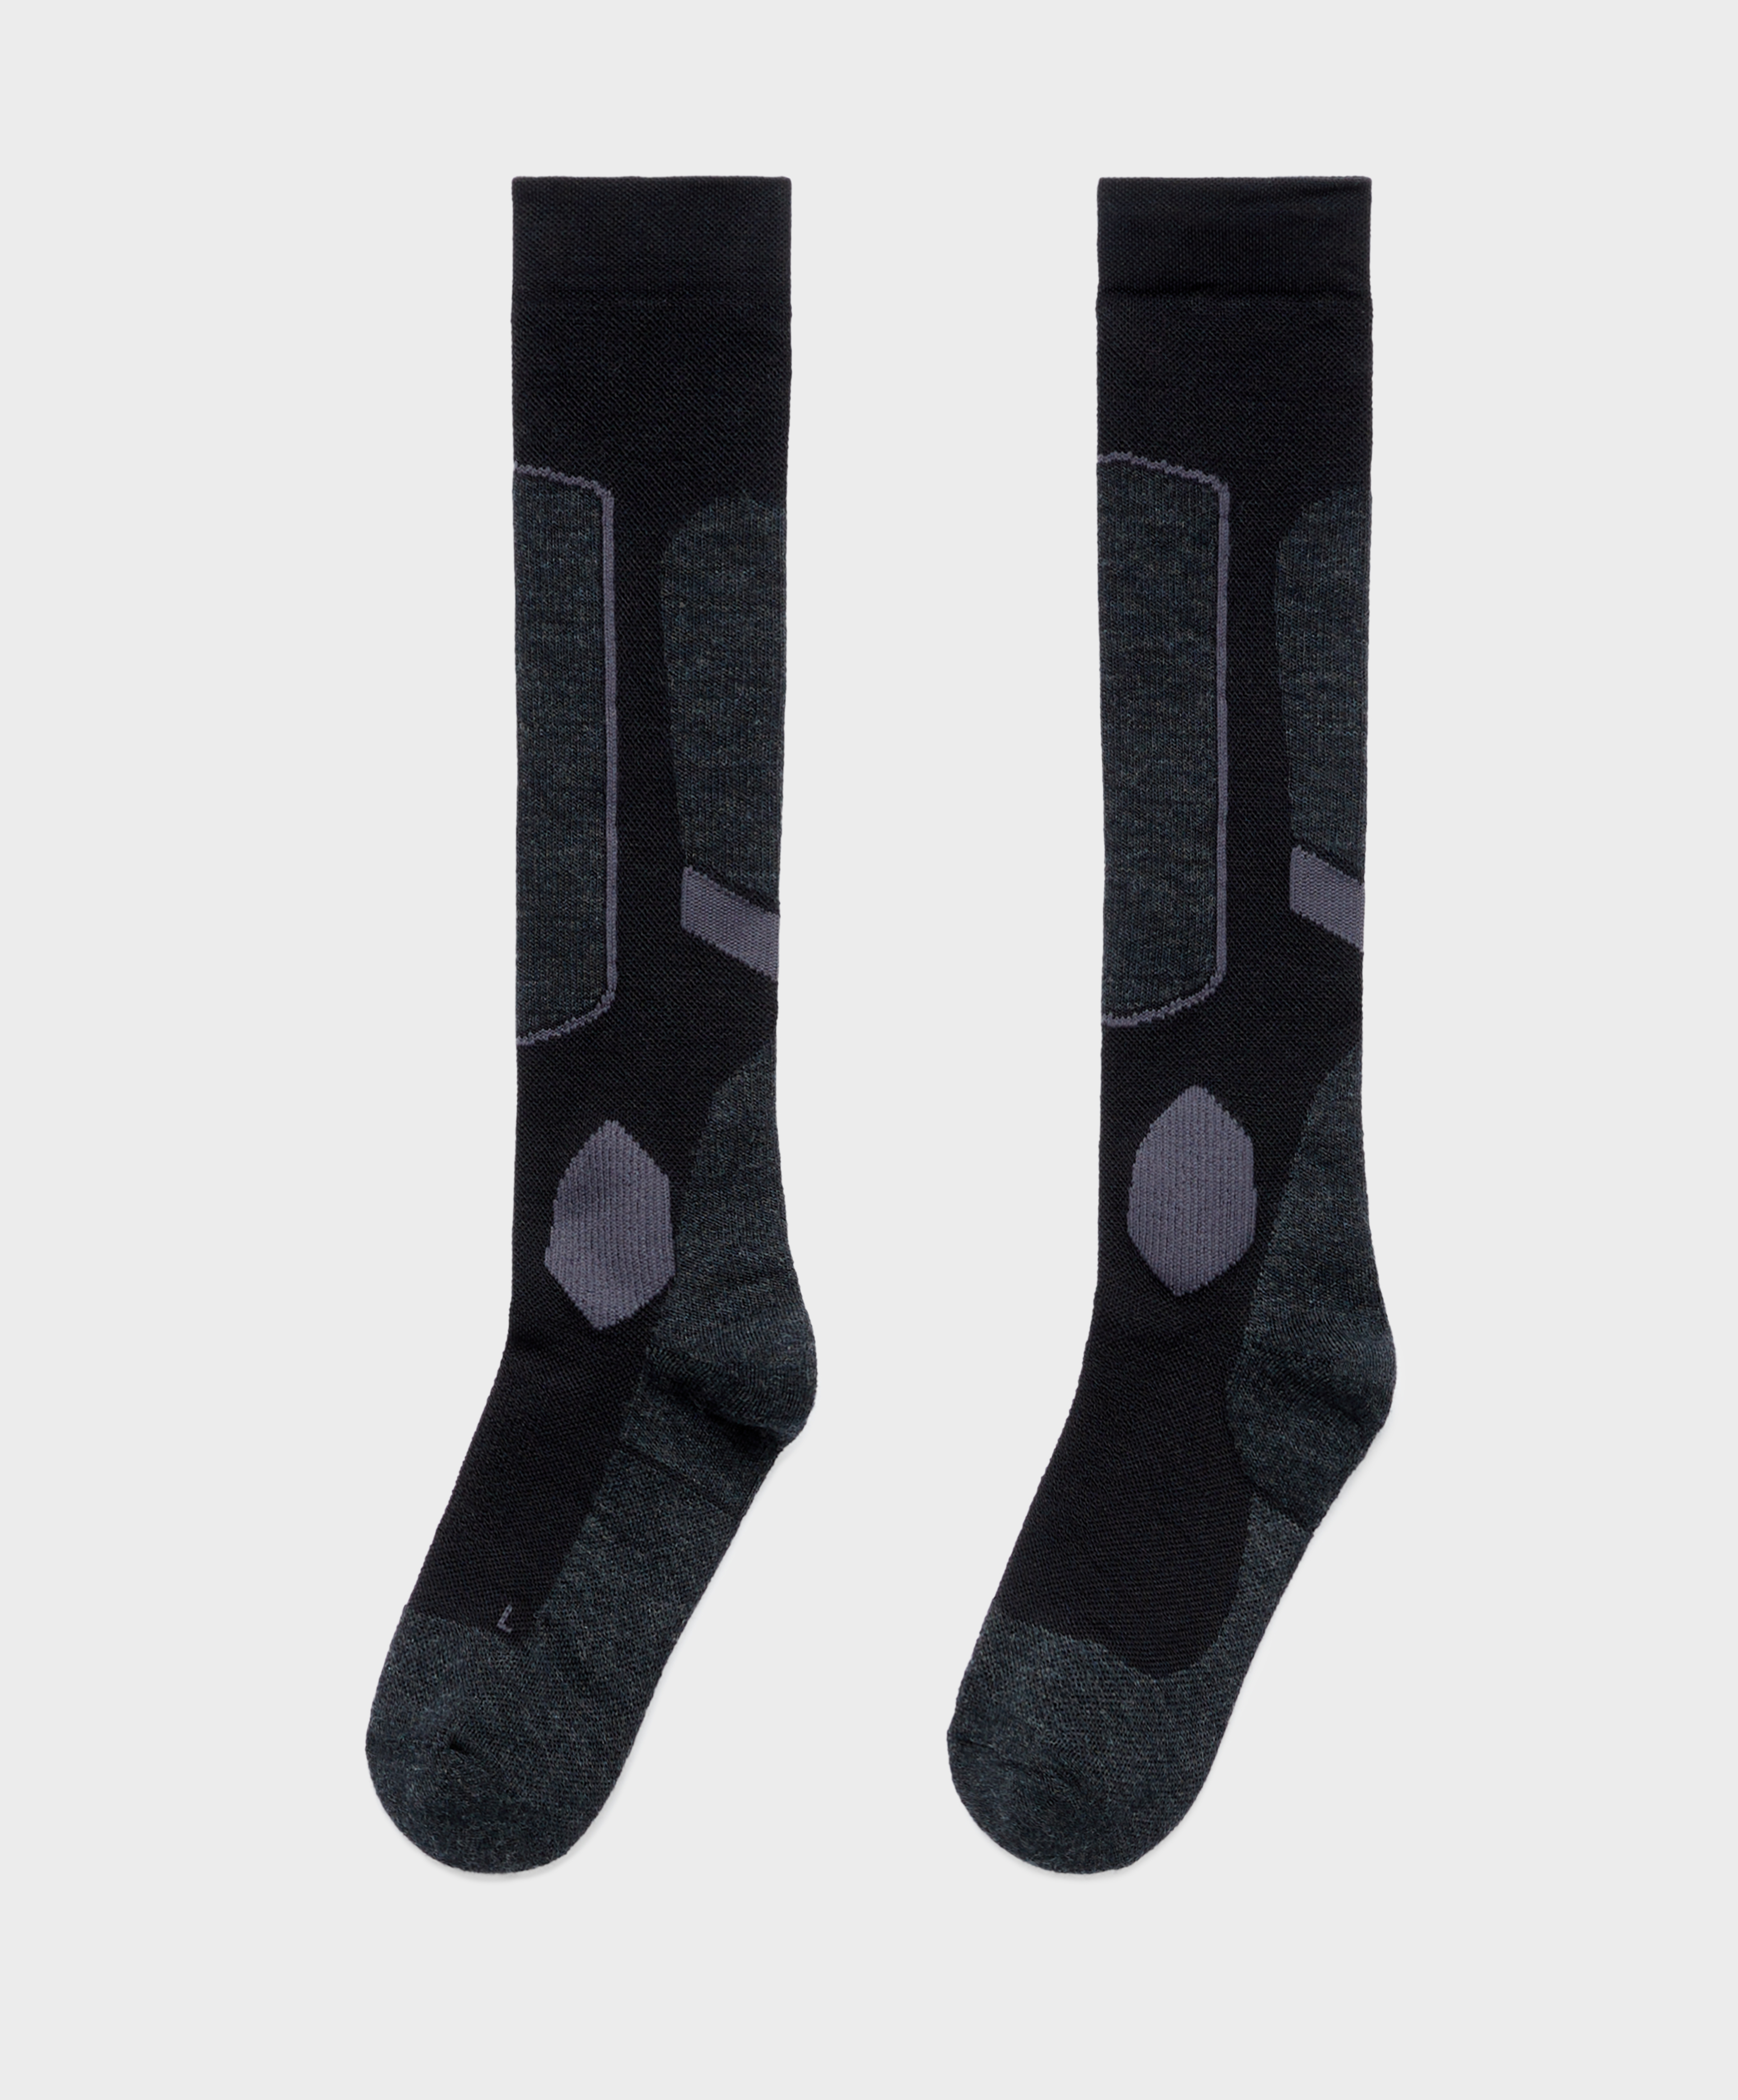 Long SKI socks